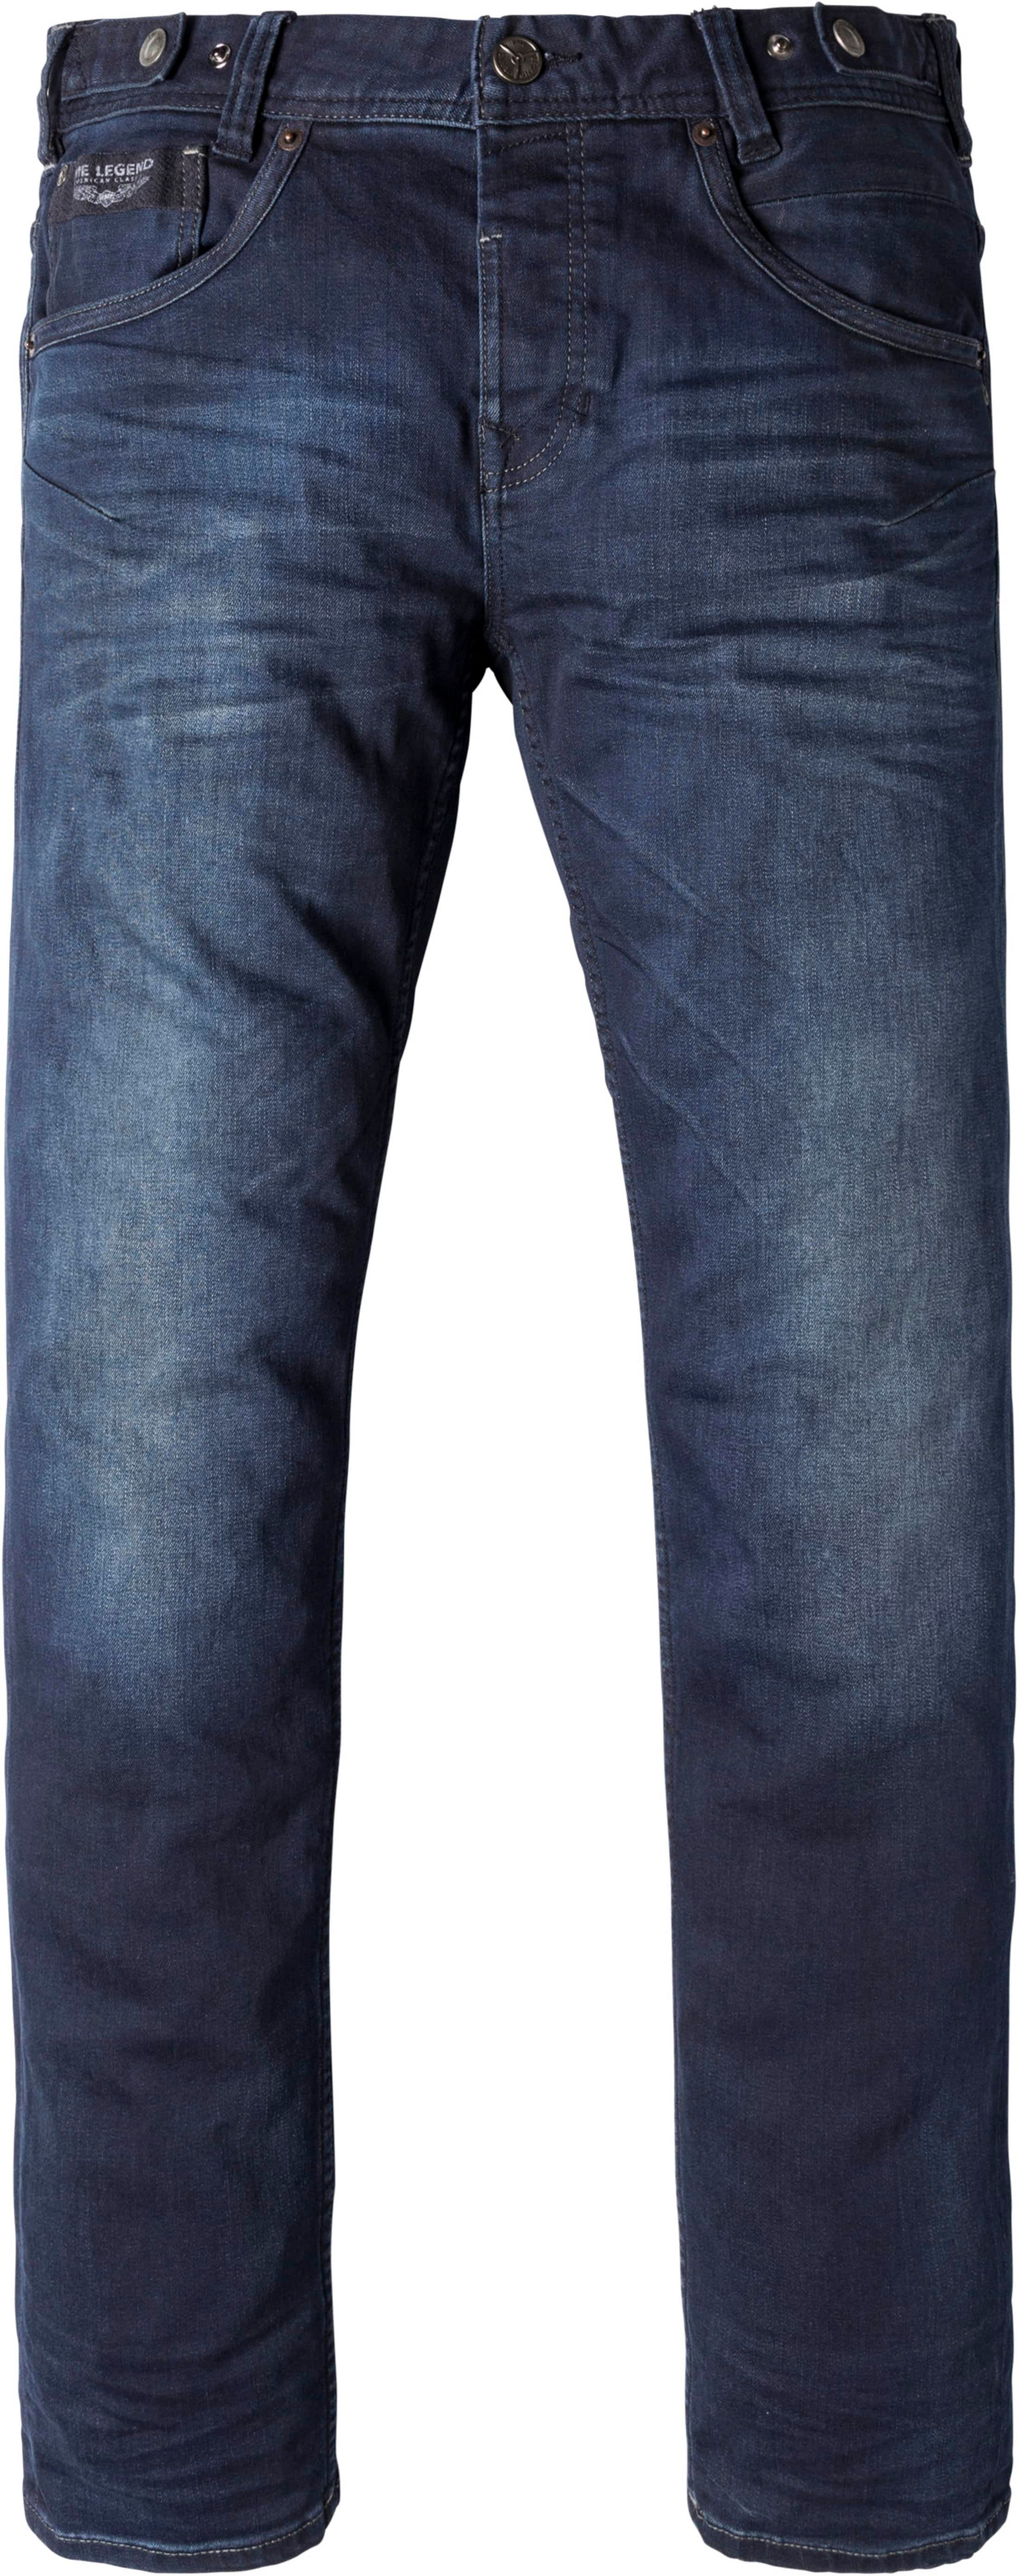 PME Legend Skyhawk Jeans Sky Dark Blue Blue size W 29